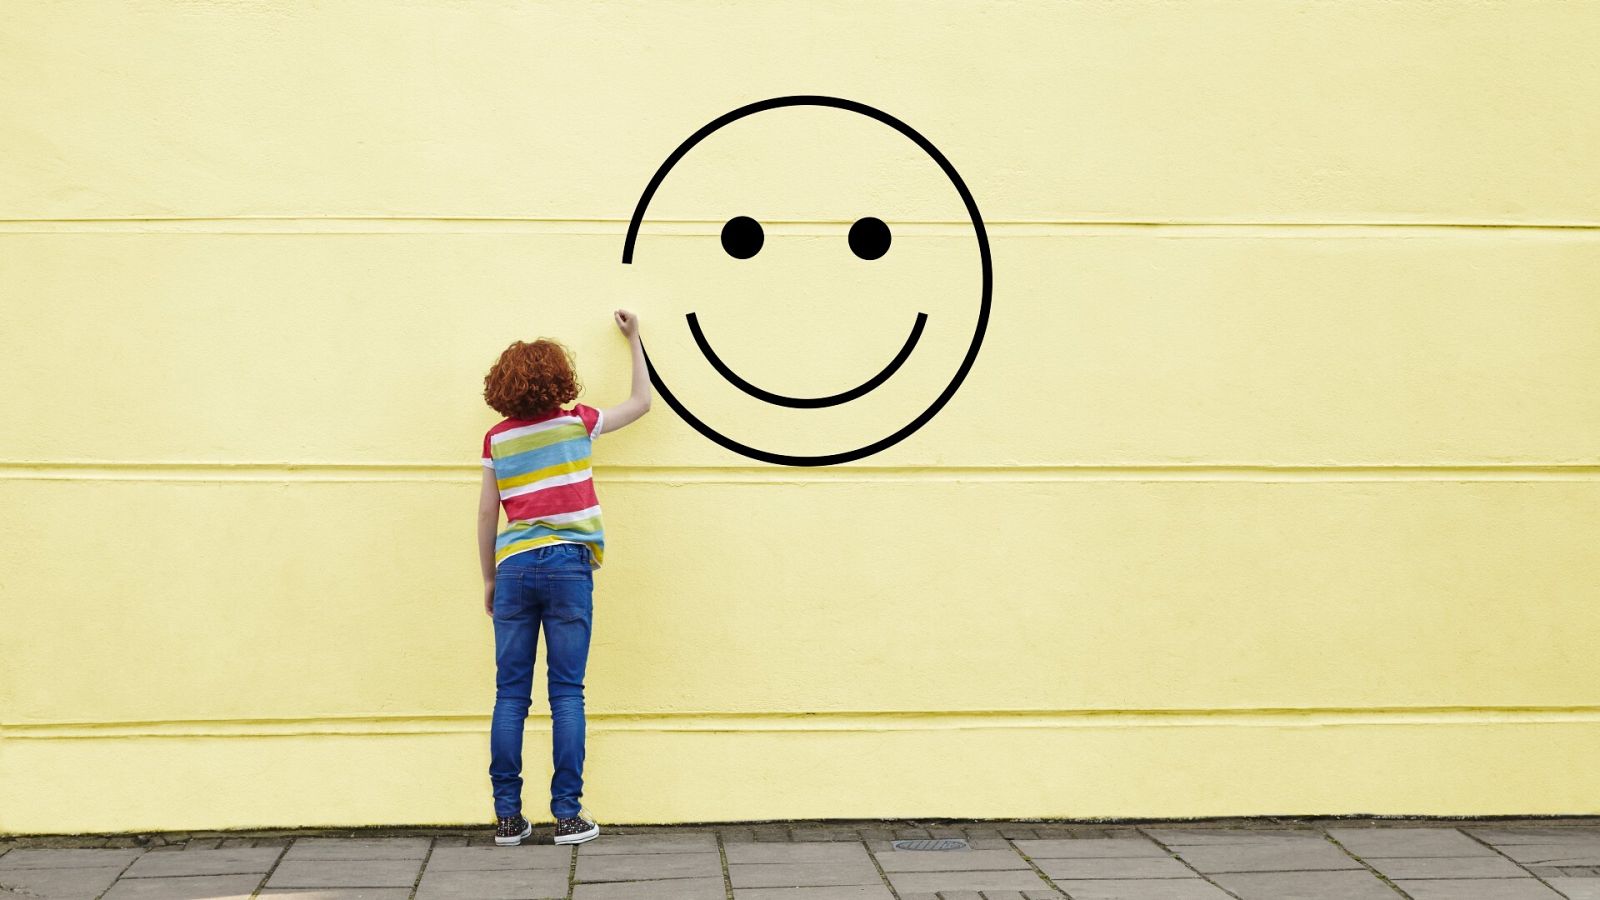 ¿Qué es la felicidad?: Una cara sonriente pintada en un muro amarillo